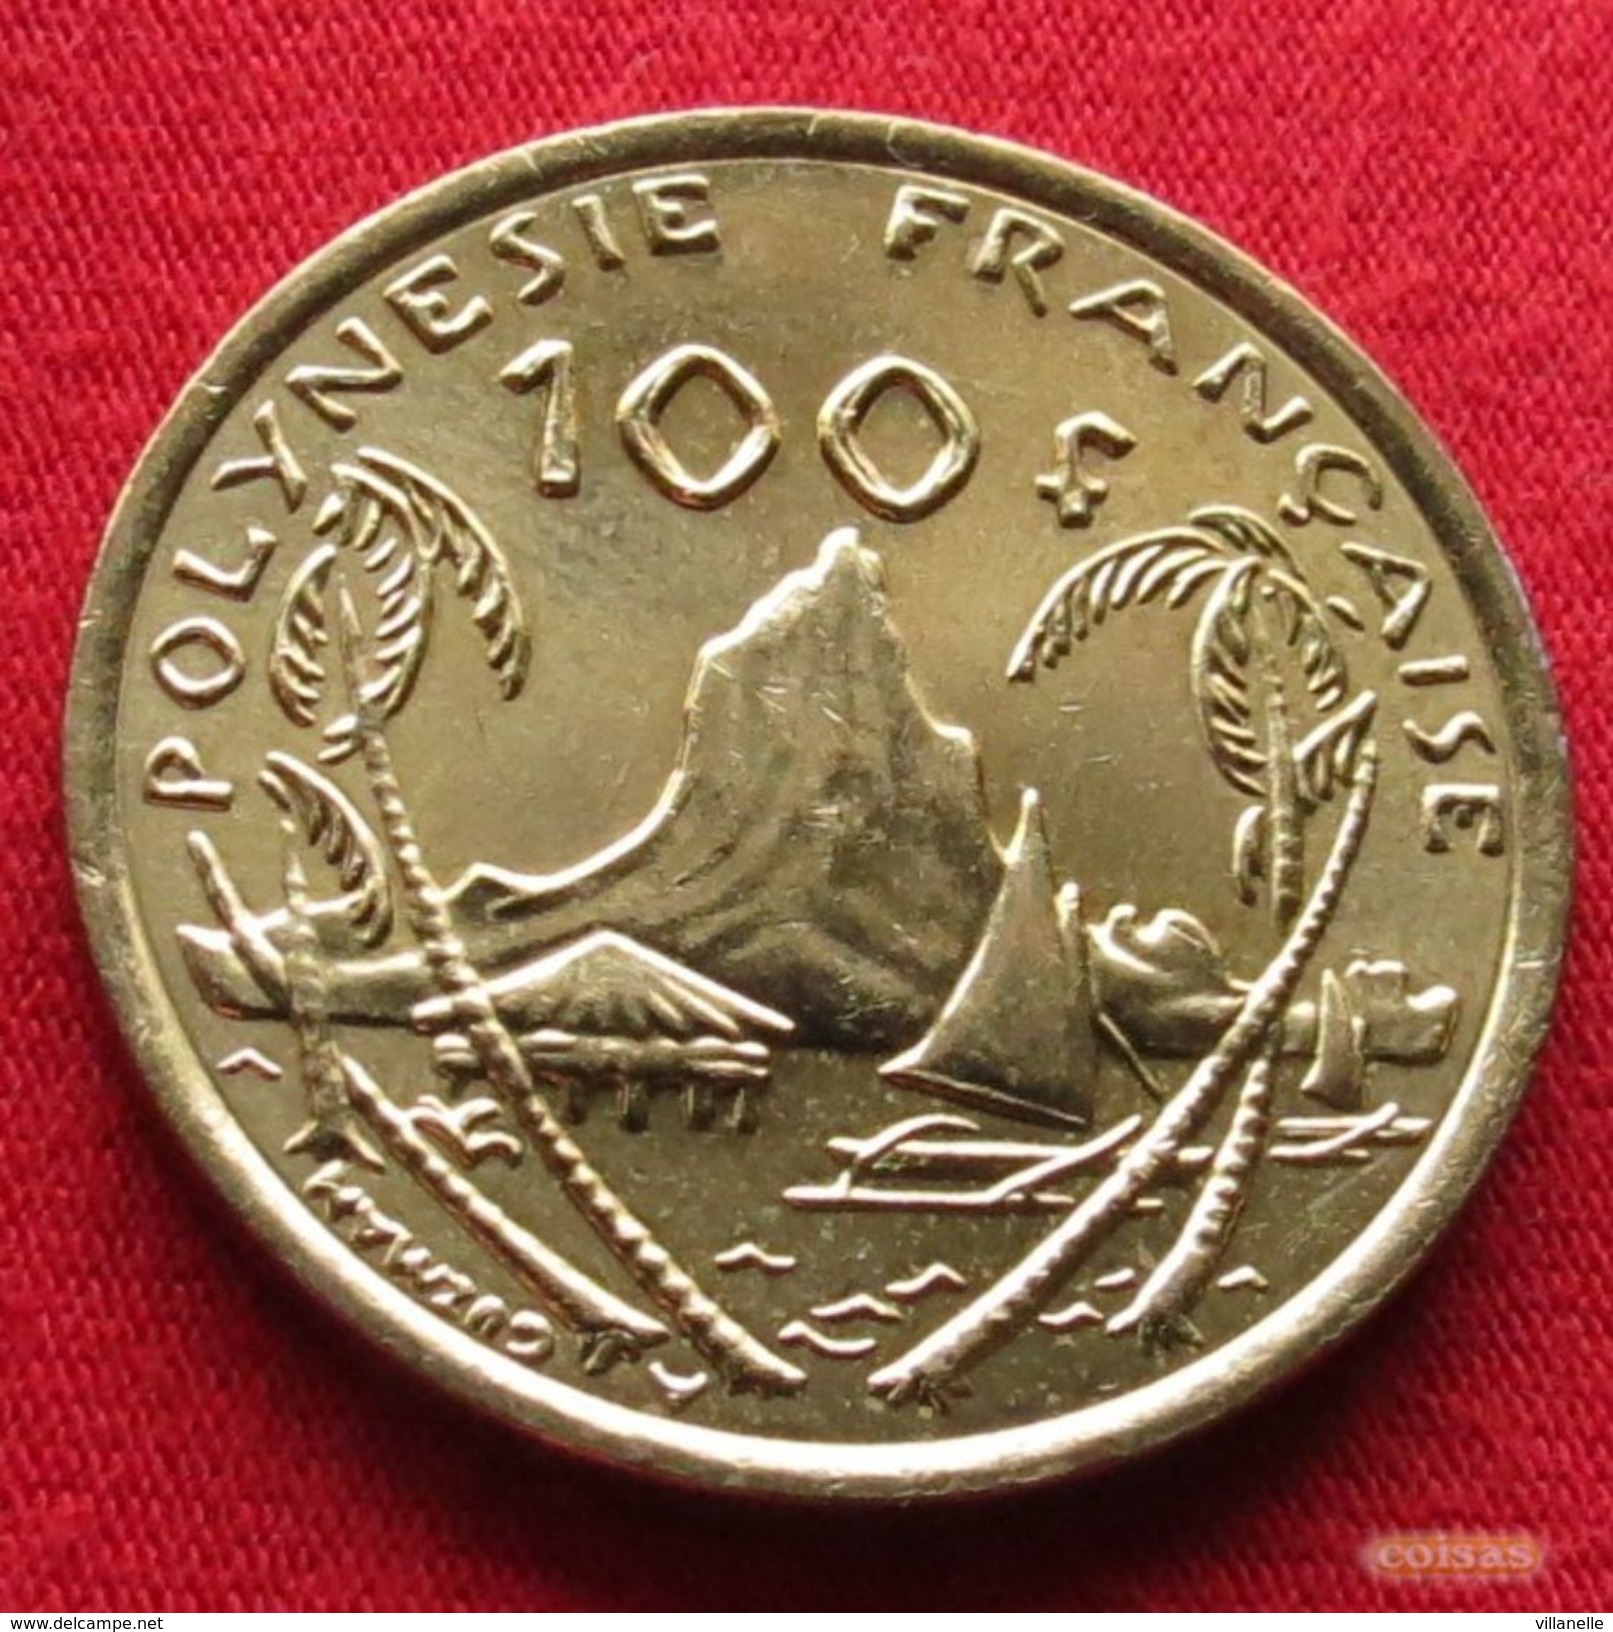 French Polynesia 100 Francs 2008 KM# 14a Polynesie Polinesia - Polynésie Française